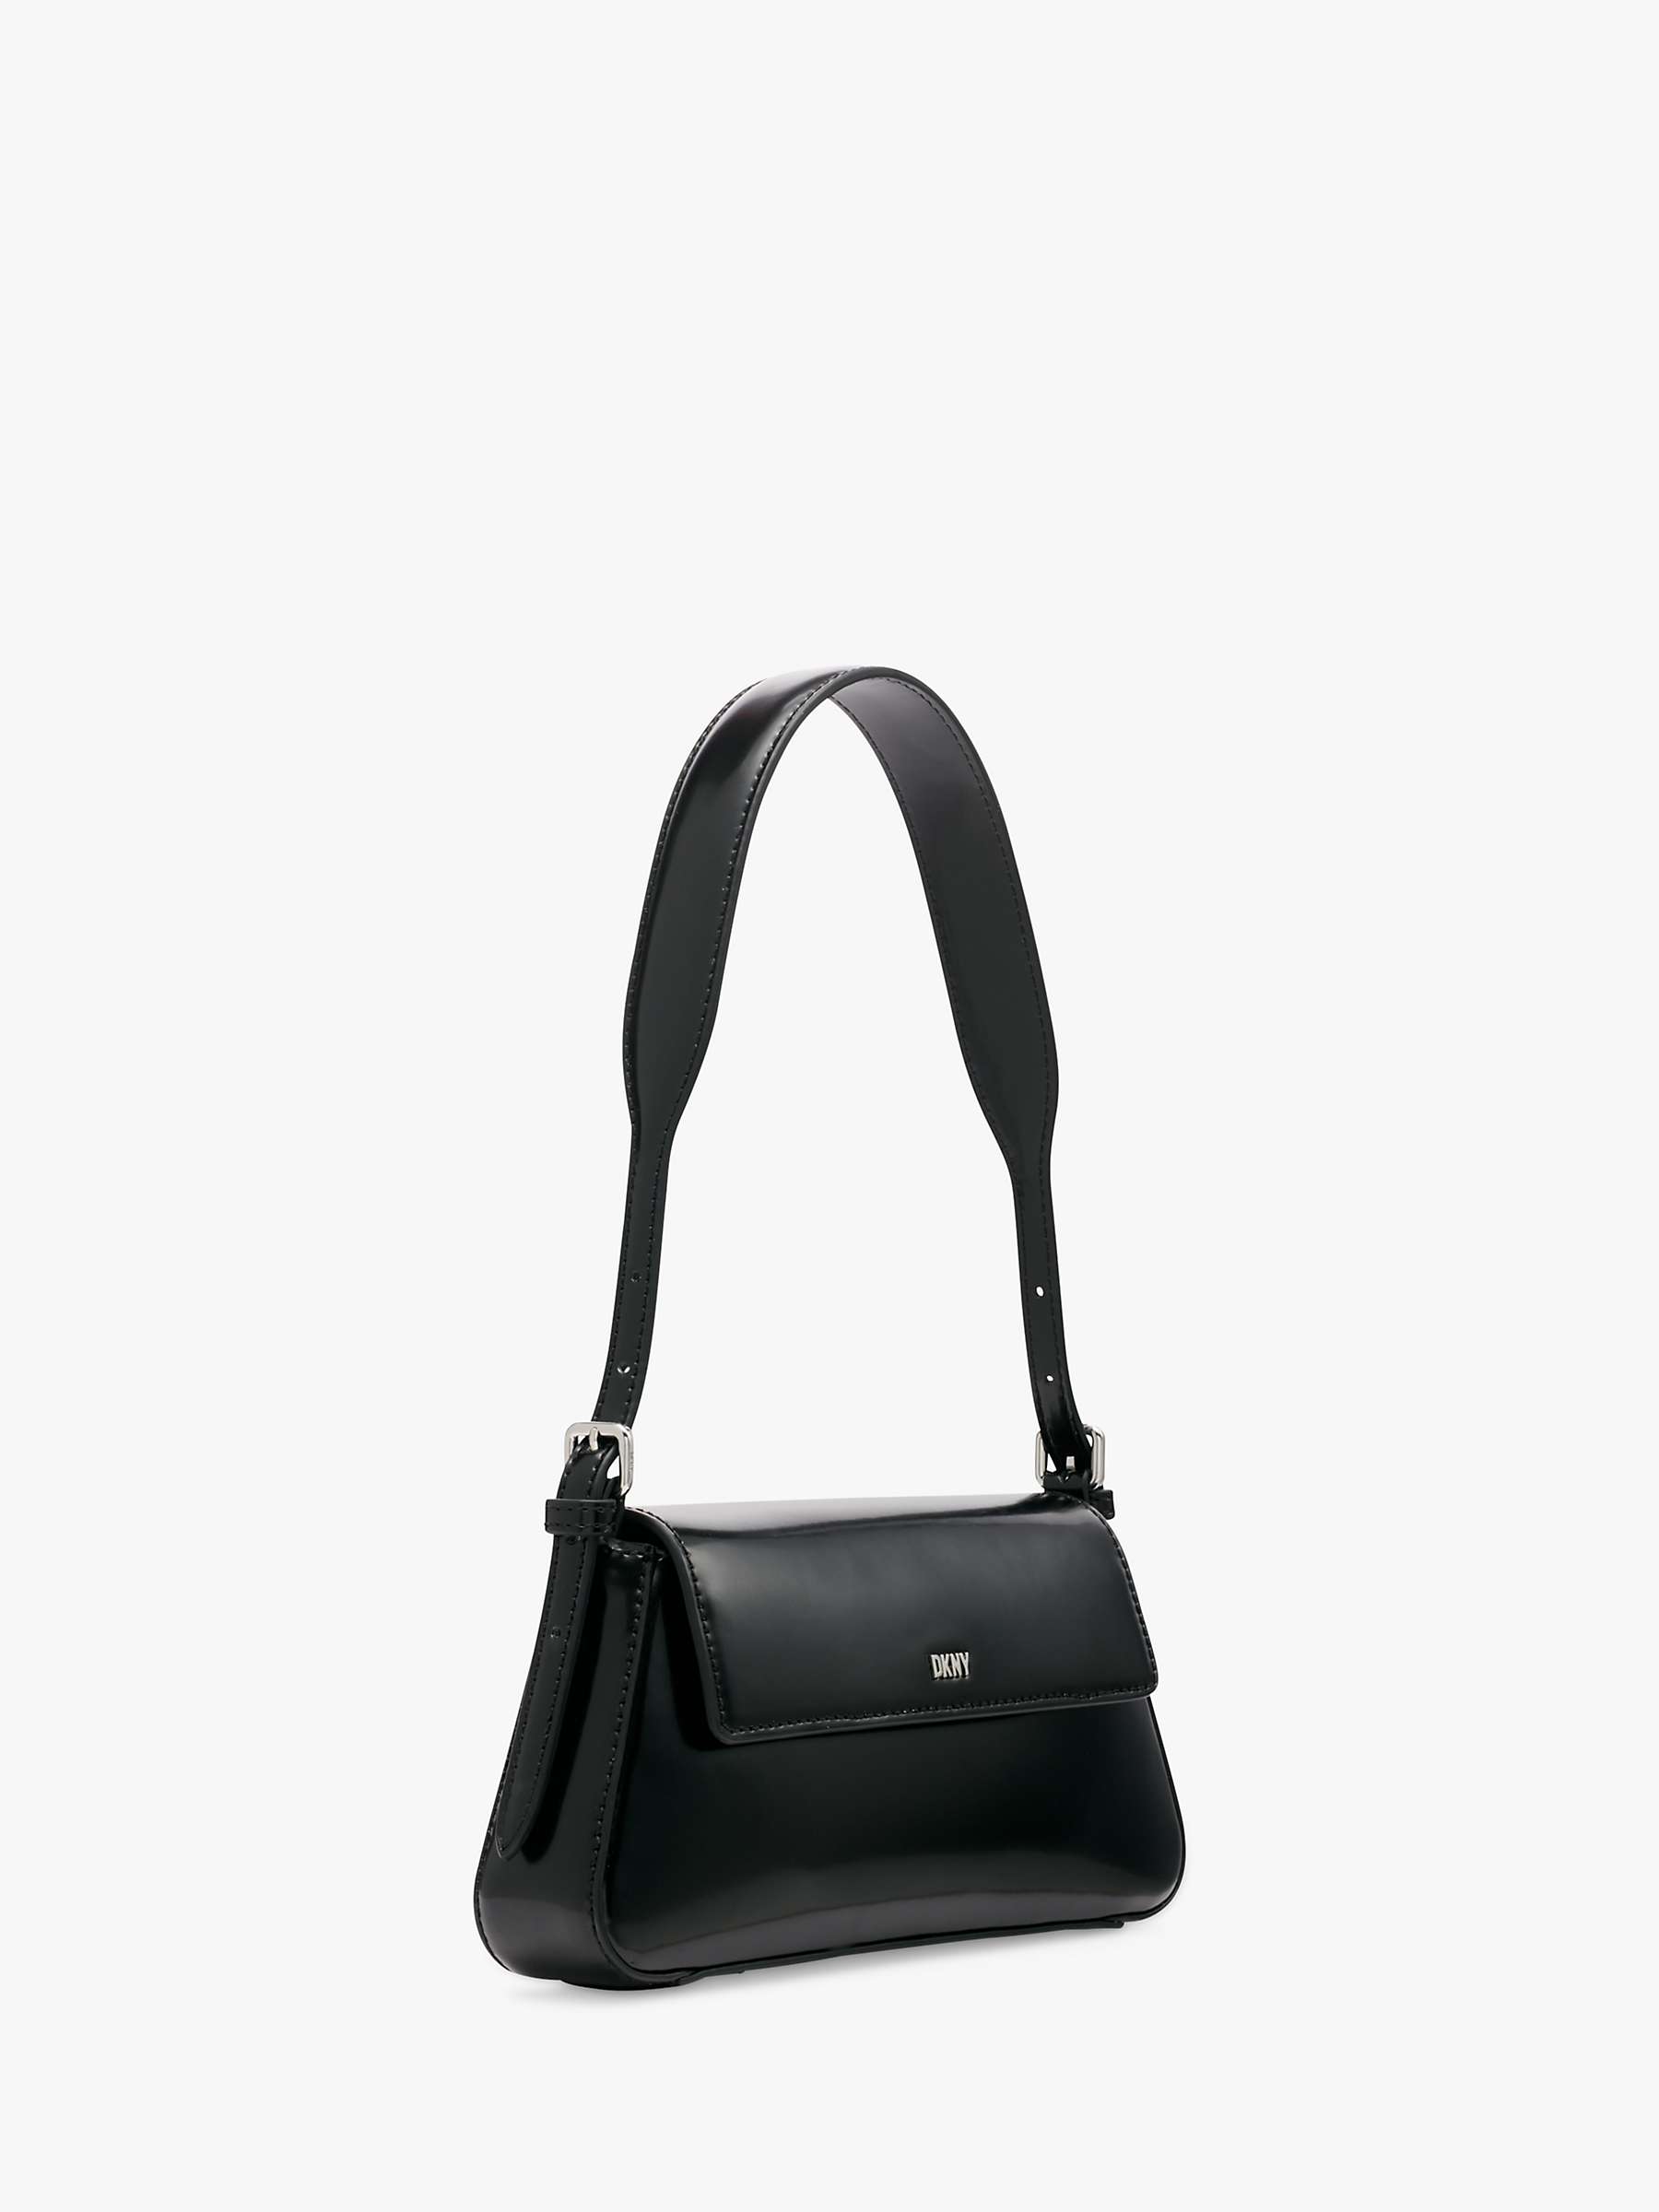 DKNY Suri Flap Over Shoulder Bag, Black/Silver at John Lewis & Partners